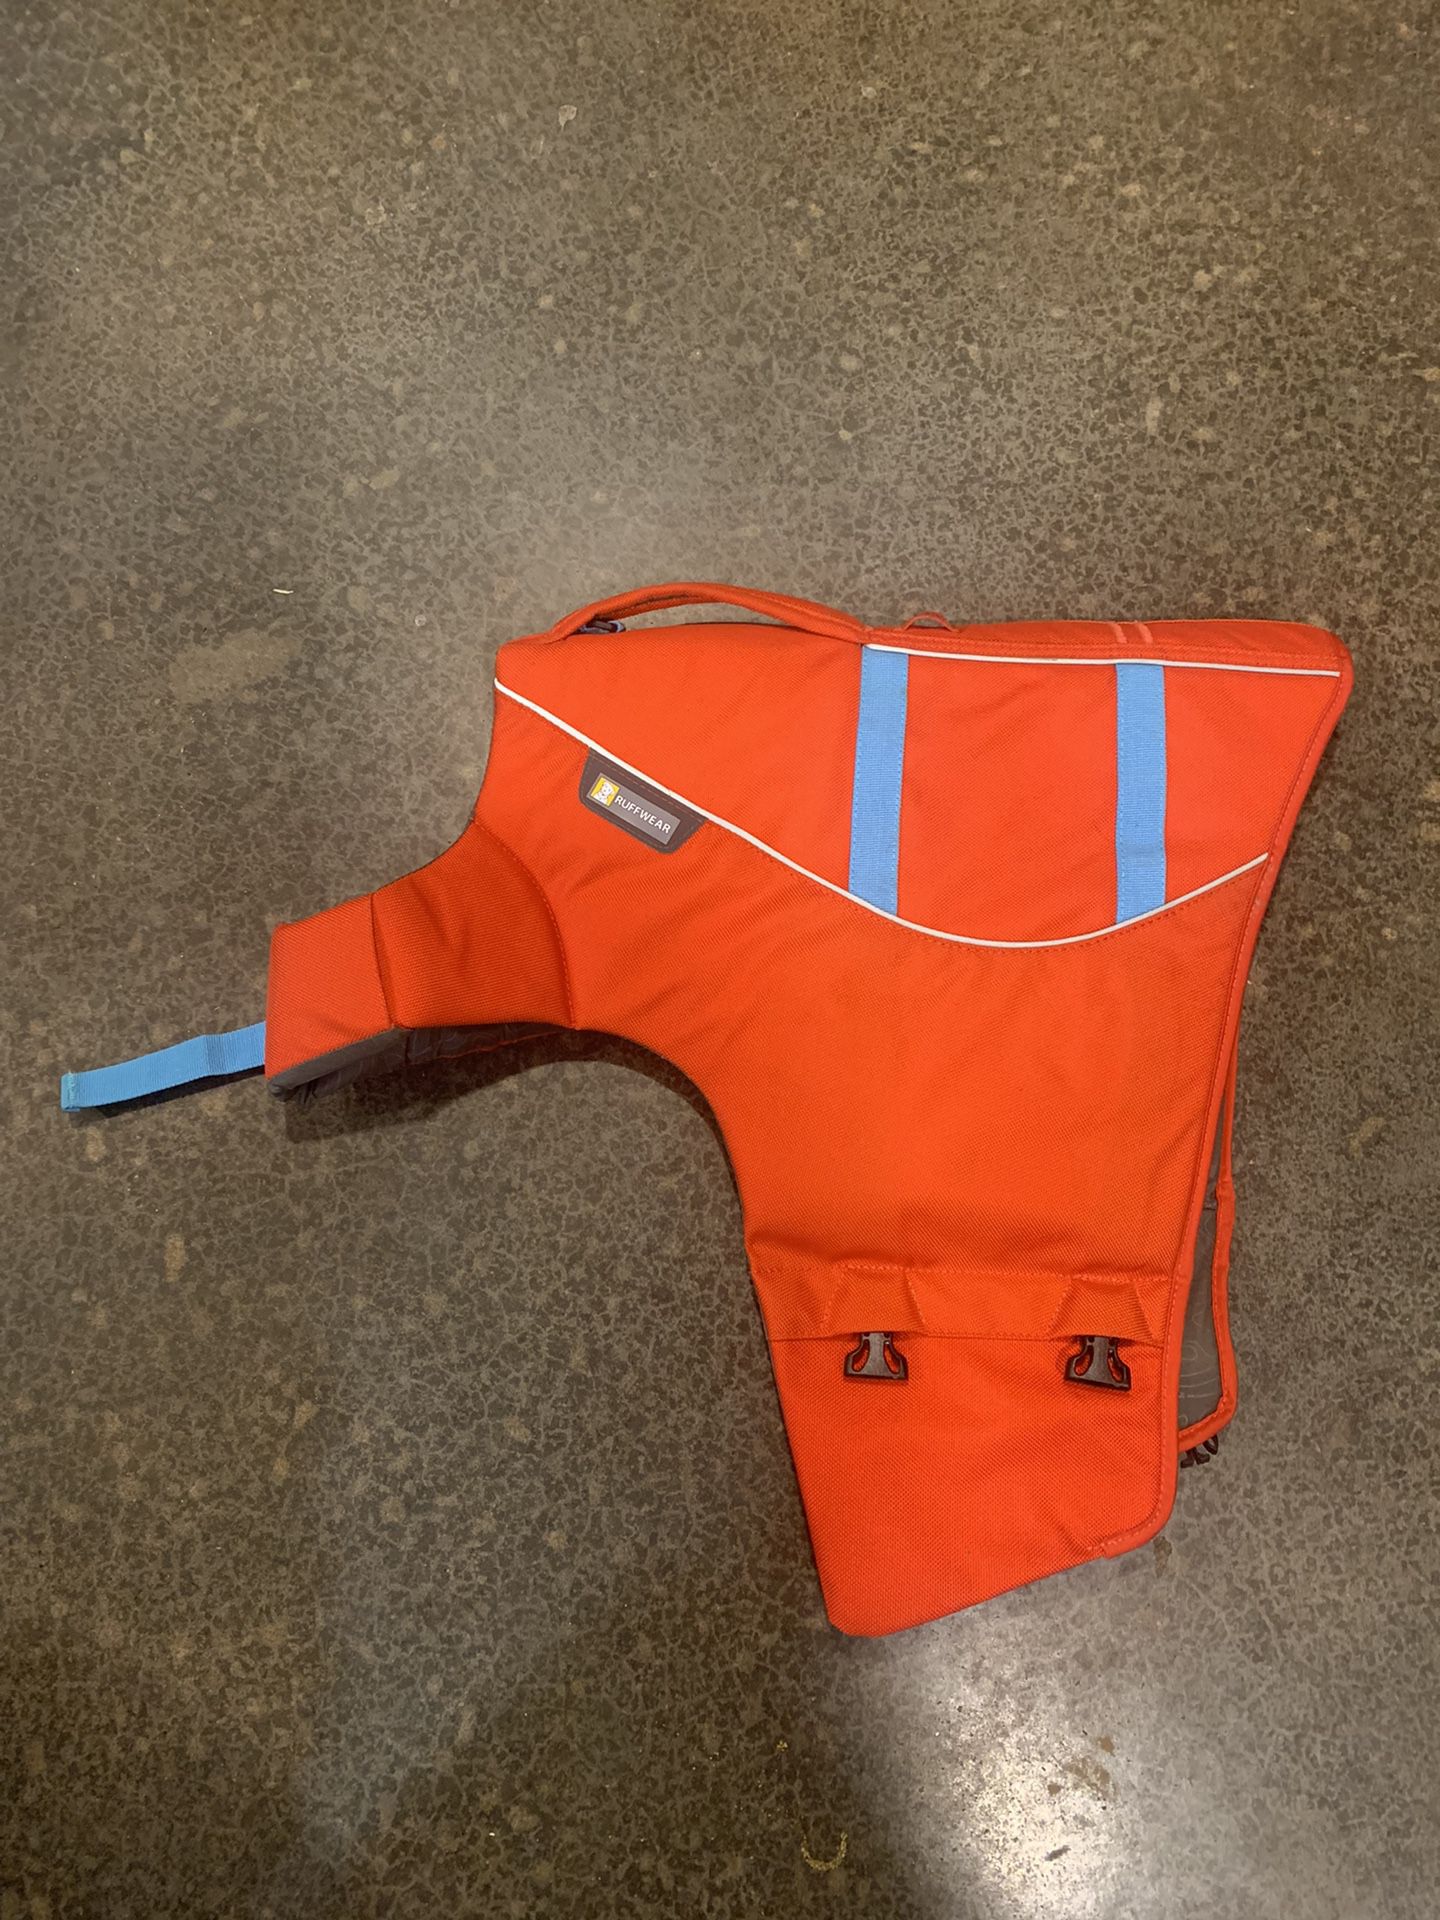 RUFFWEAR XL Dog Floatation Life Vest 